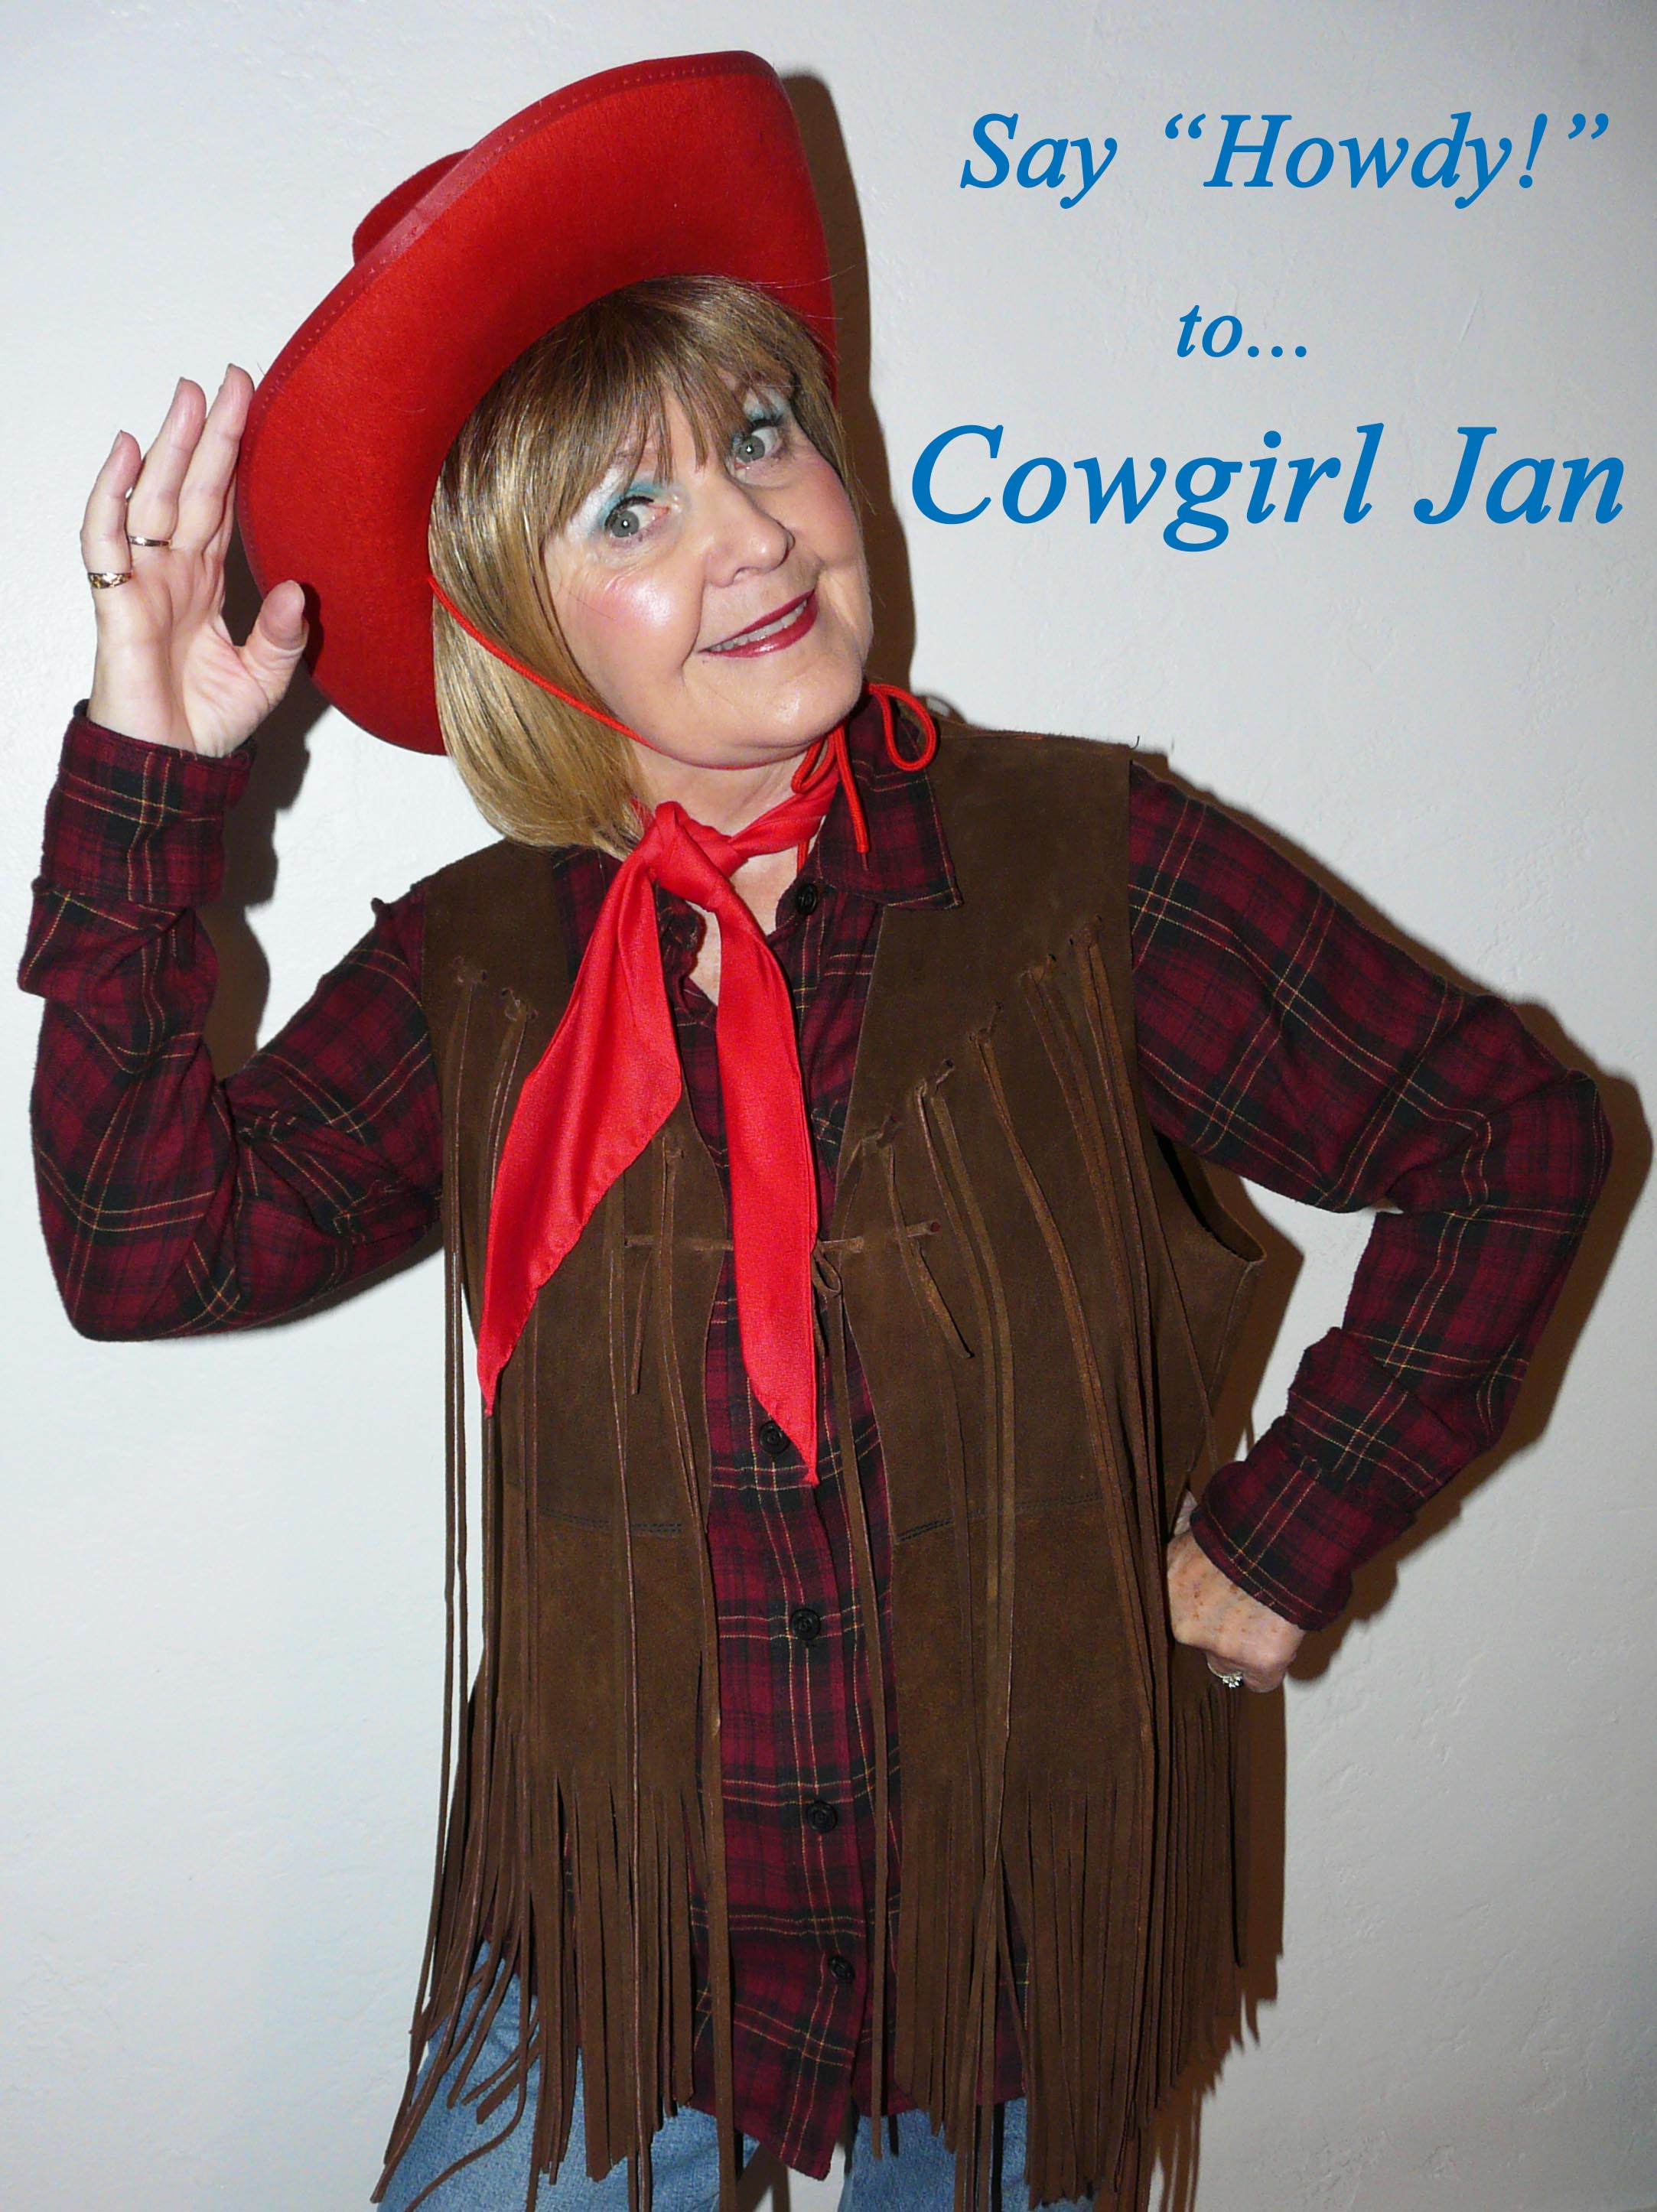 Cowgirl Jan